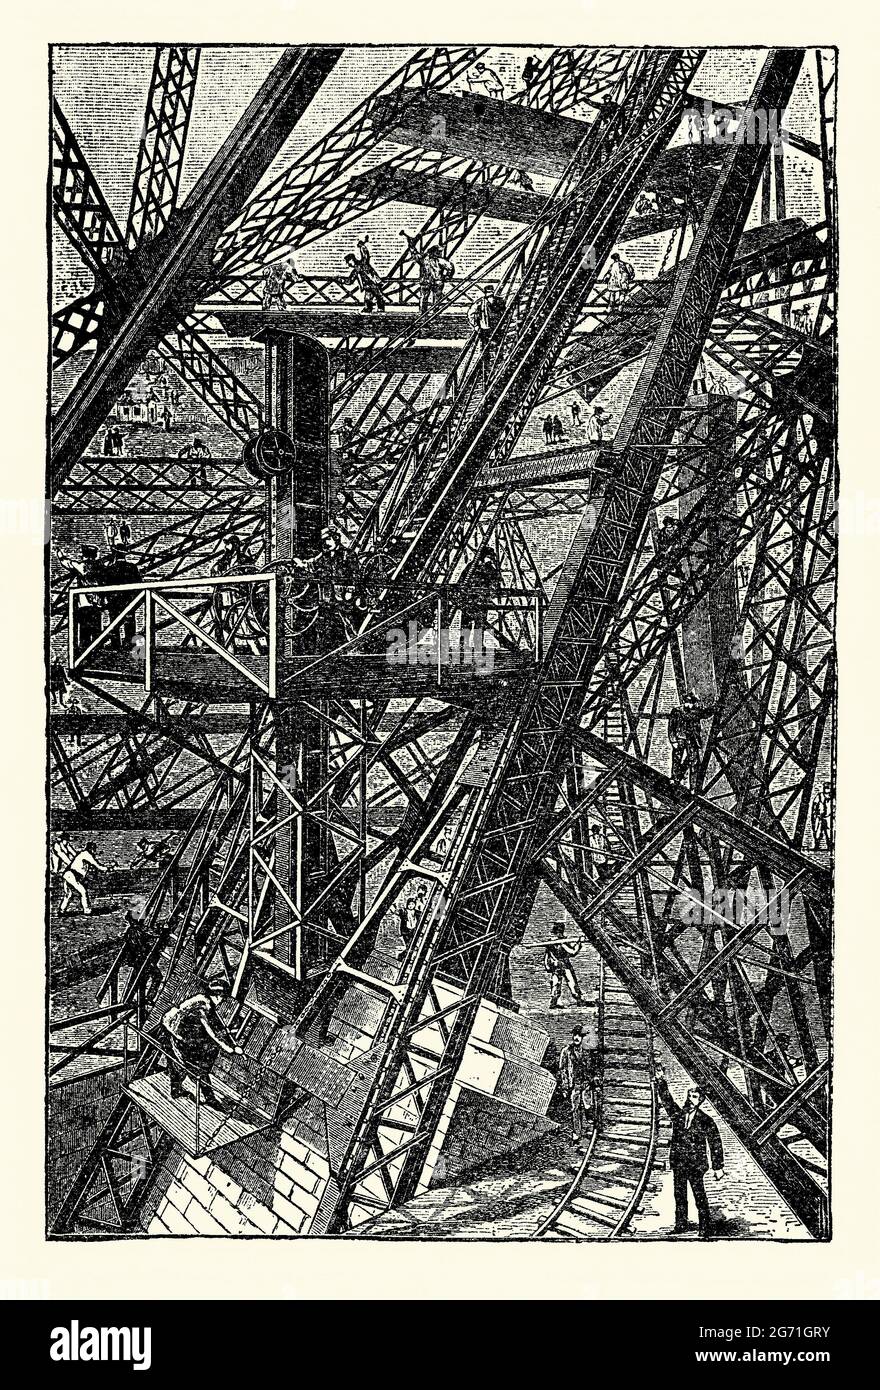 Ein alter Stich, der den Bau des Eiffelturms in Paris, Frankreich, während der frühen Phasen um 1887 zeigt. Es stammt aus einem Buch der 1890er Jahre über Entdeckungen und Erfindungen im 19. Jahrhundert. Der Eiffelturm ist ein schmiedeeiserner Gitterturm auf dem Champs de Mars, Paris, Frankreich. Es ist nach dem Ingenieur Gustave Eiffel benannt, dessen Firma den Turm gebaut hat. Die Arbeiten an den Stiftungsgründungen begannen 1887. Hier erhebt sich das Eisenwerk aus den Kalkstein- und Betonfundamenten. Vorgefertigte Eisenbauteile wurden zermahrt/vernietet - vor Ort wurden keine Bohrungen oder Formungen durchgeführt (beachten Sie die für den Transport verwendeten Schienenwege). Stockfoto